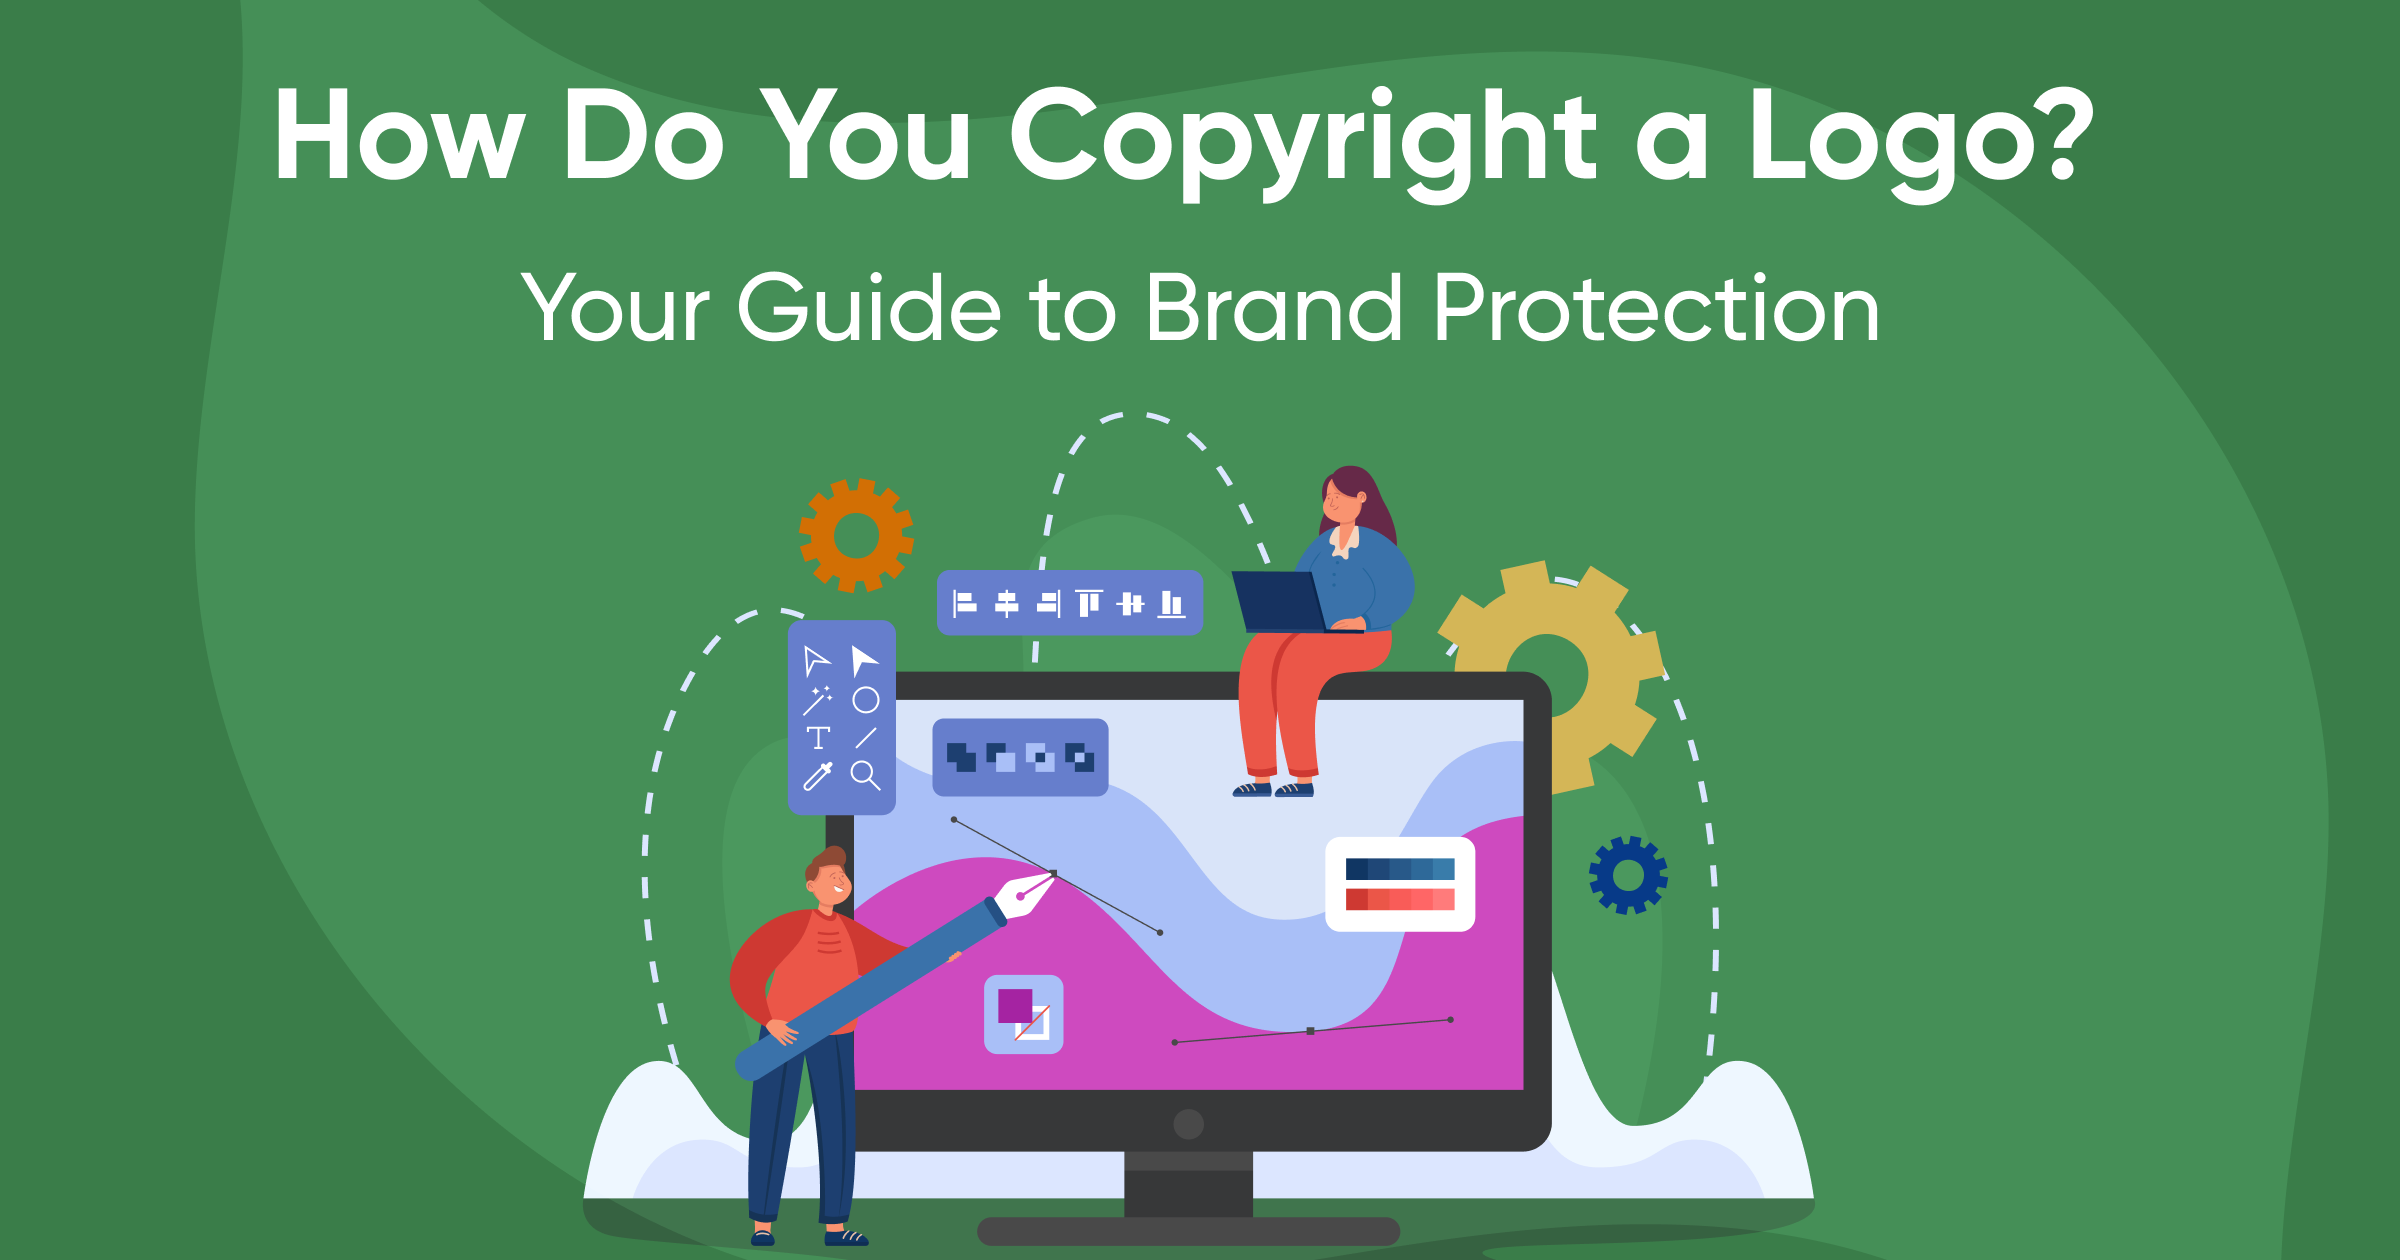 How do you copyright a logo